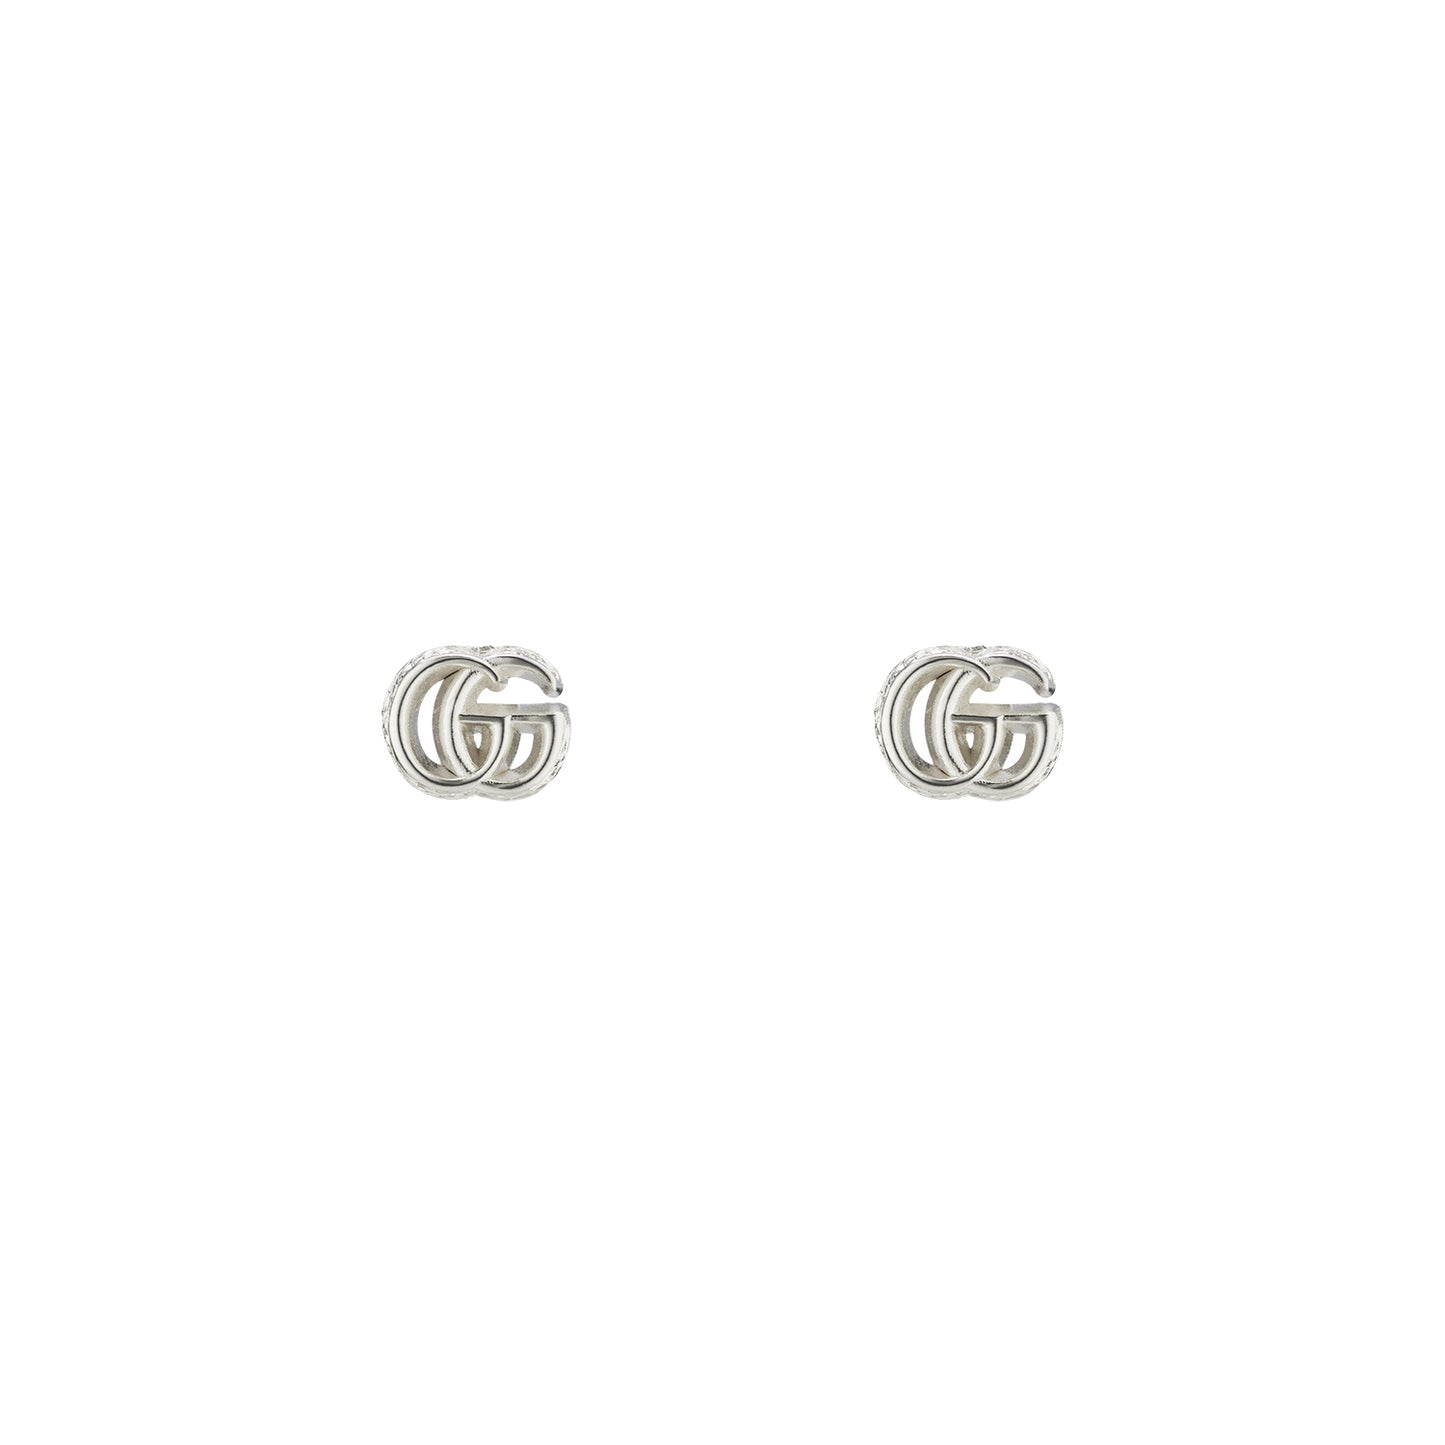 GG MARMONT earrings